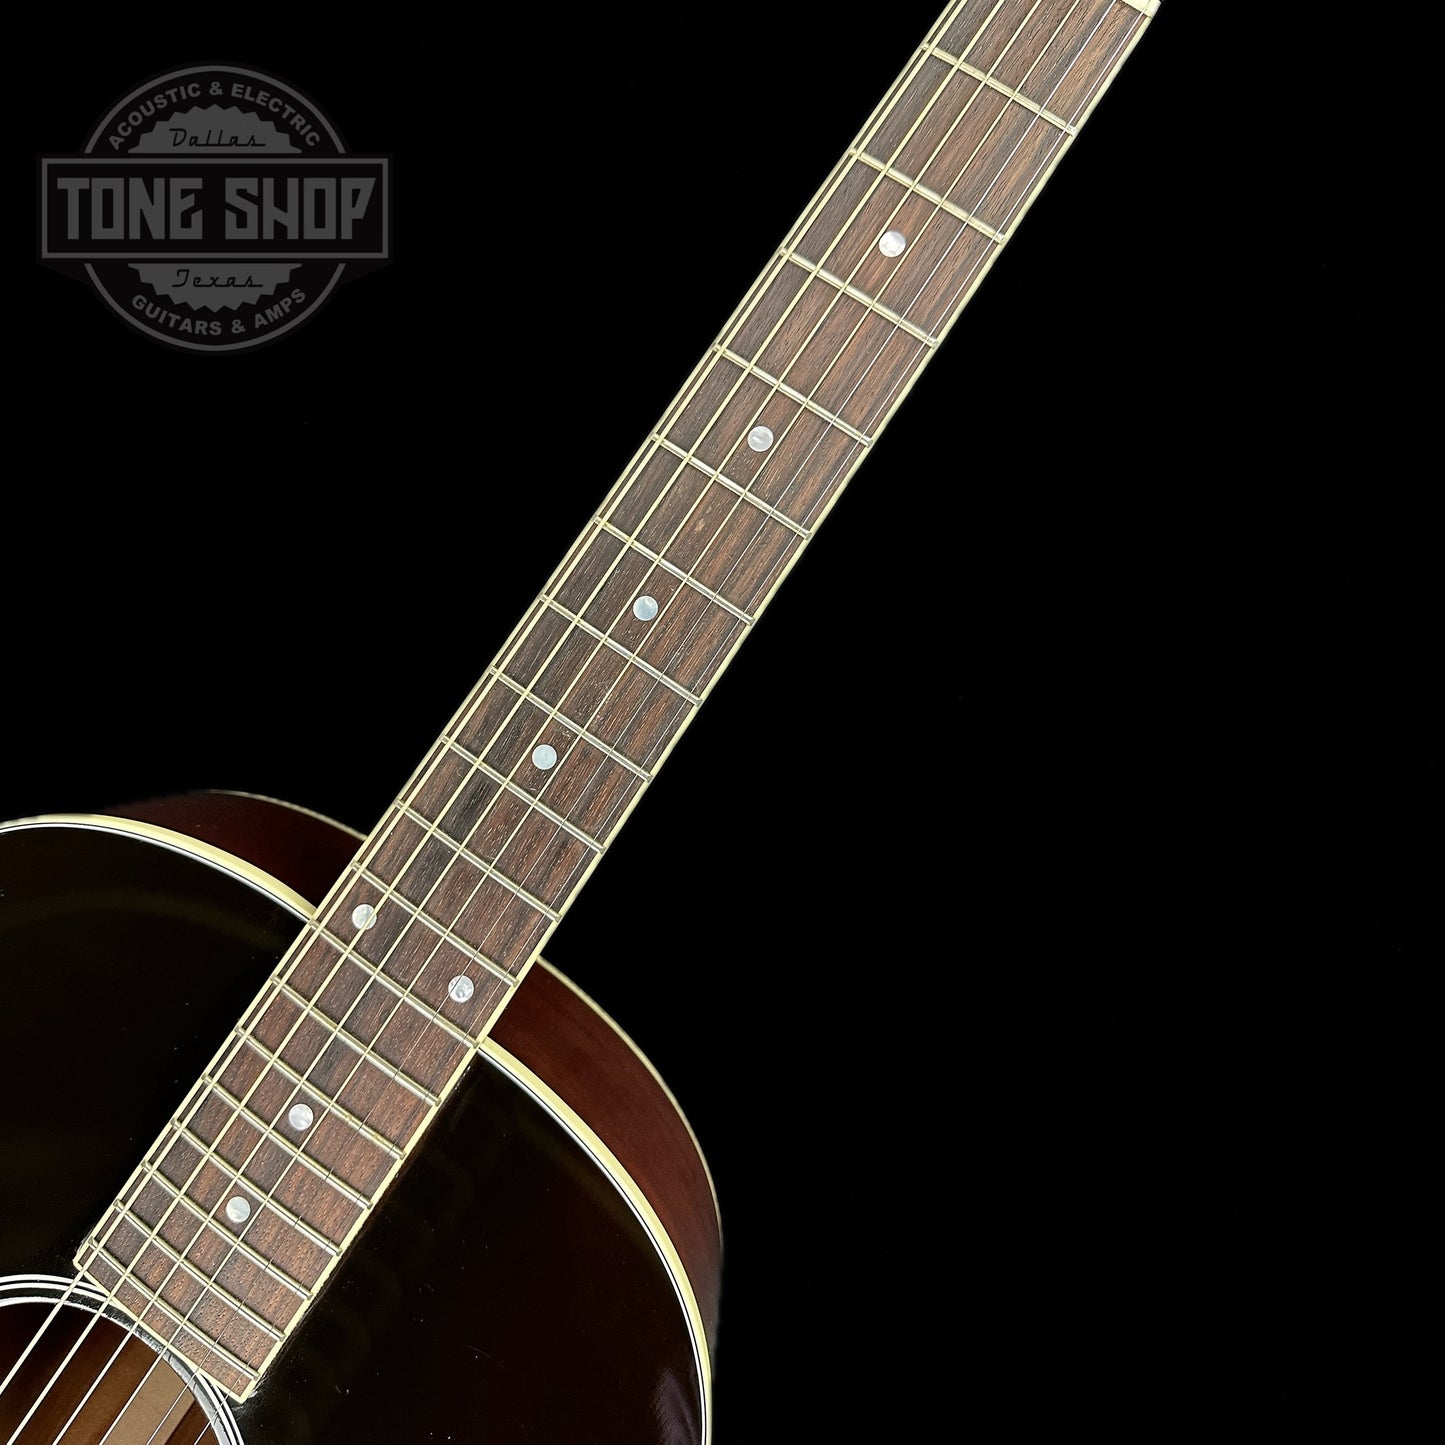 Fretboard of Used Gibson Custom Shop Keb Mo 3.0 Vintage Sunburst.